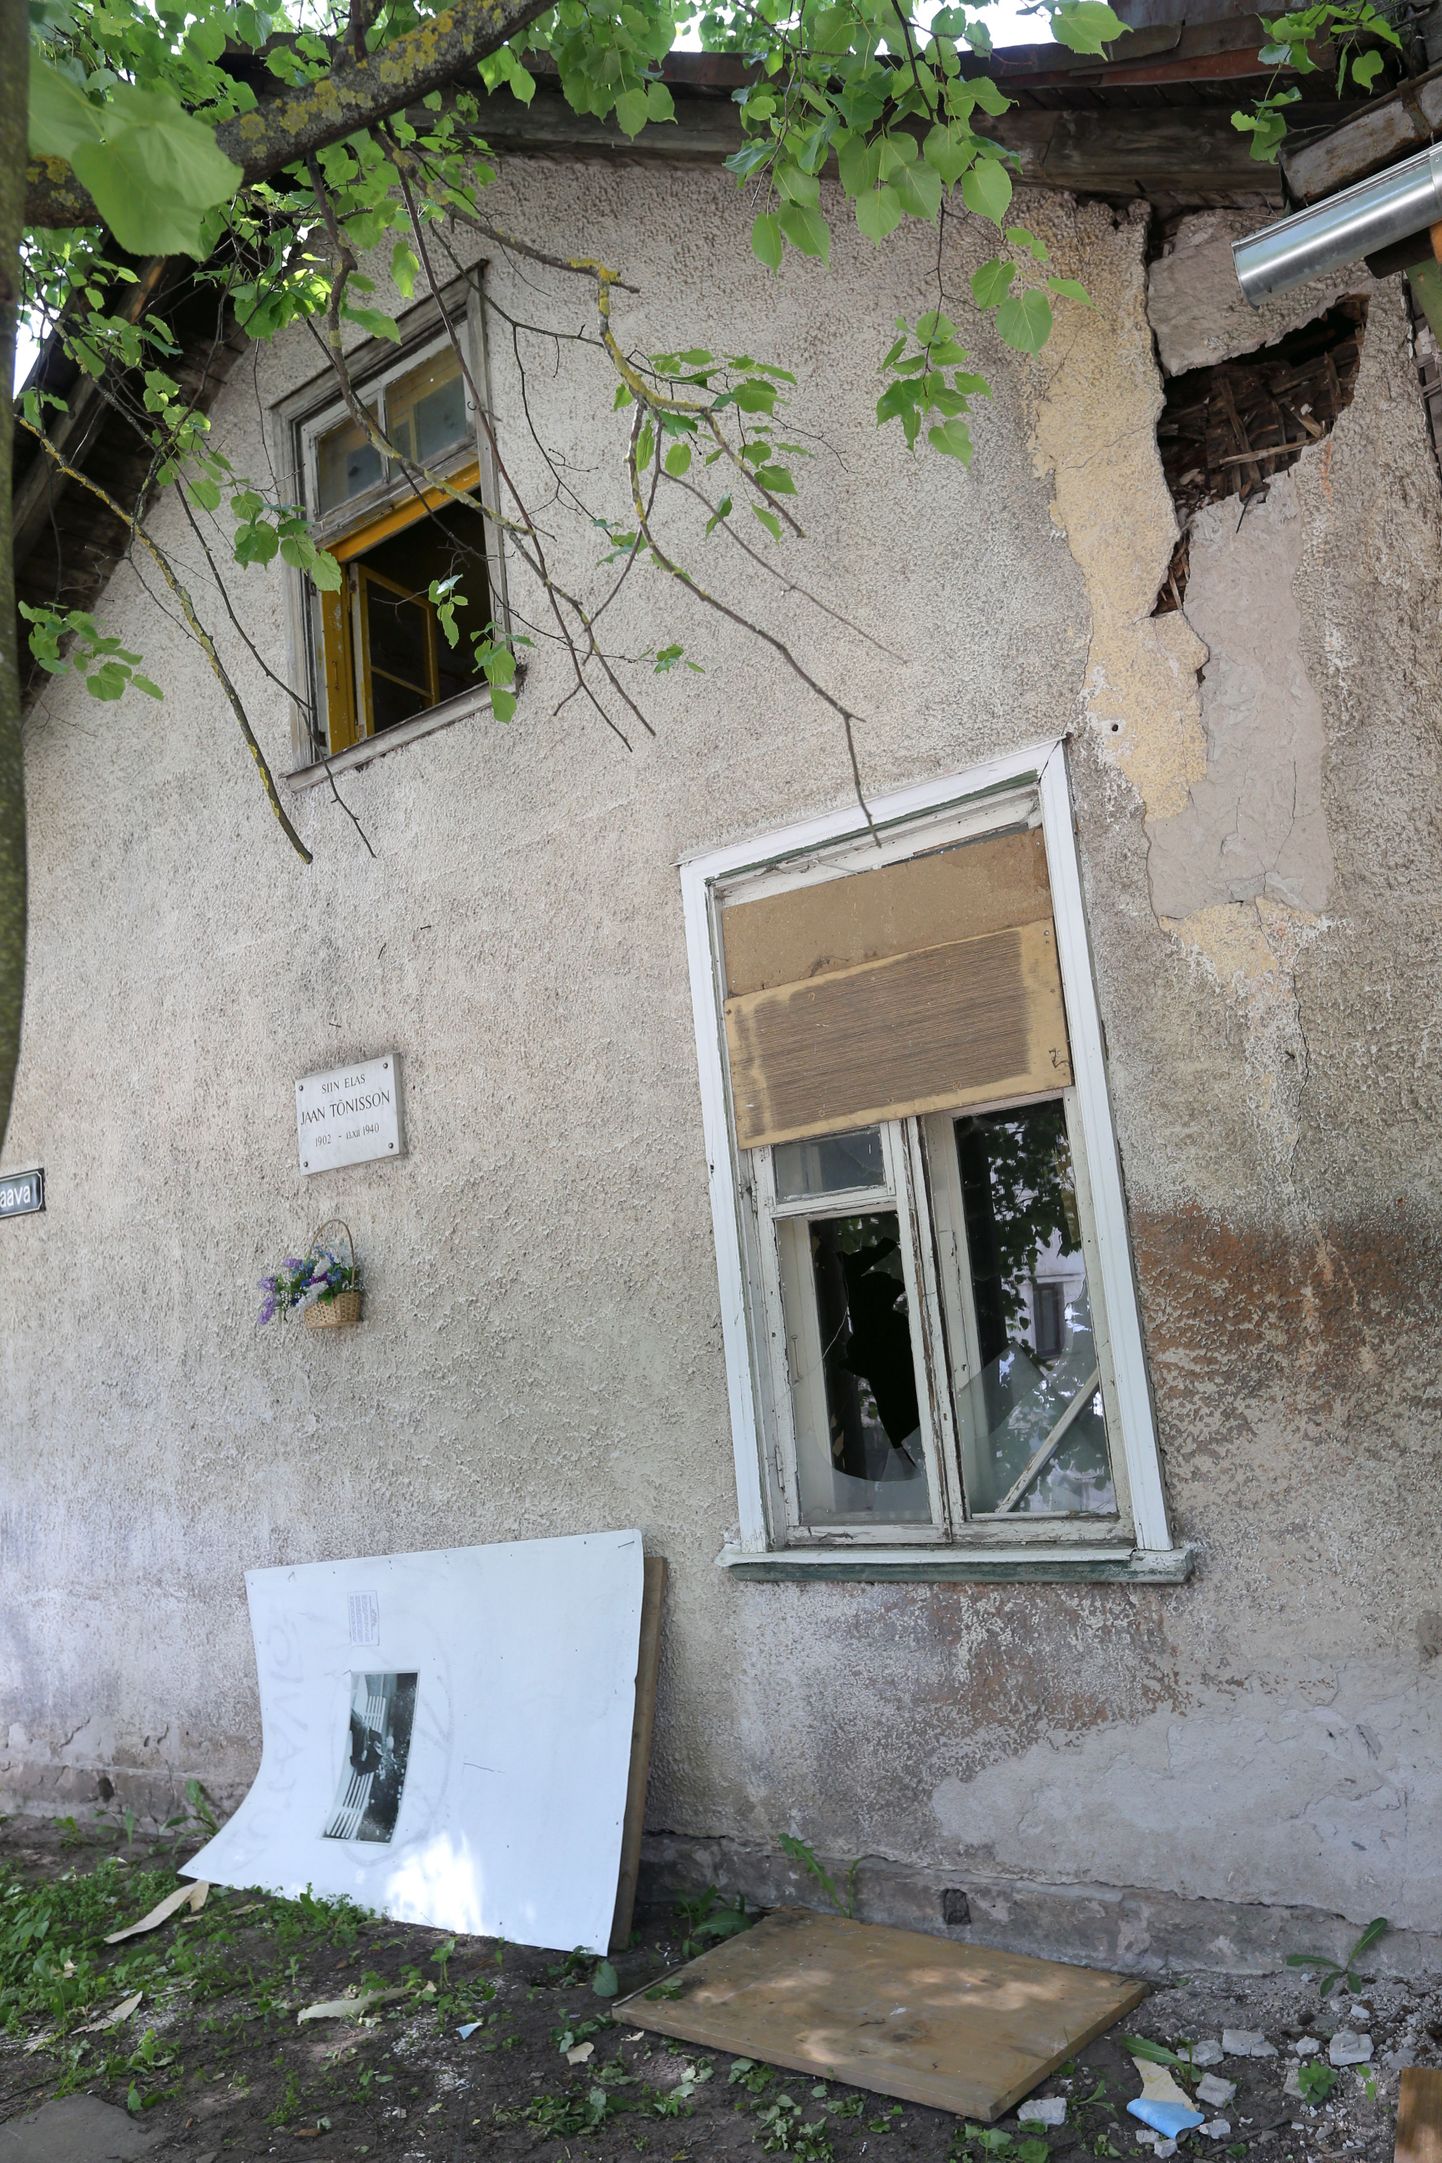 Jaan Tõnissoni majja kolinud skvotterid eemaldasid katkiste klaasidega akende eest sinna aastaid tagasi löödud plekktahvlid, et hoonet saaks tuulutada.